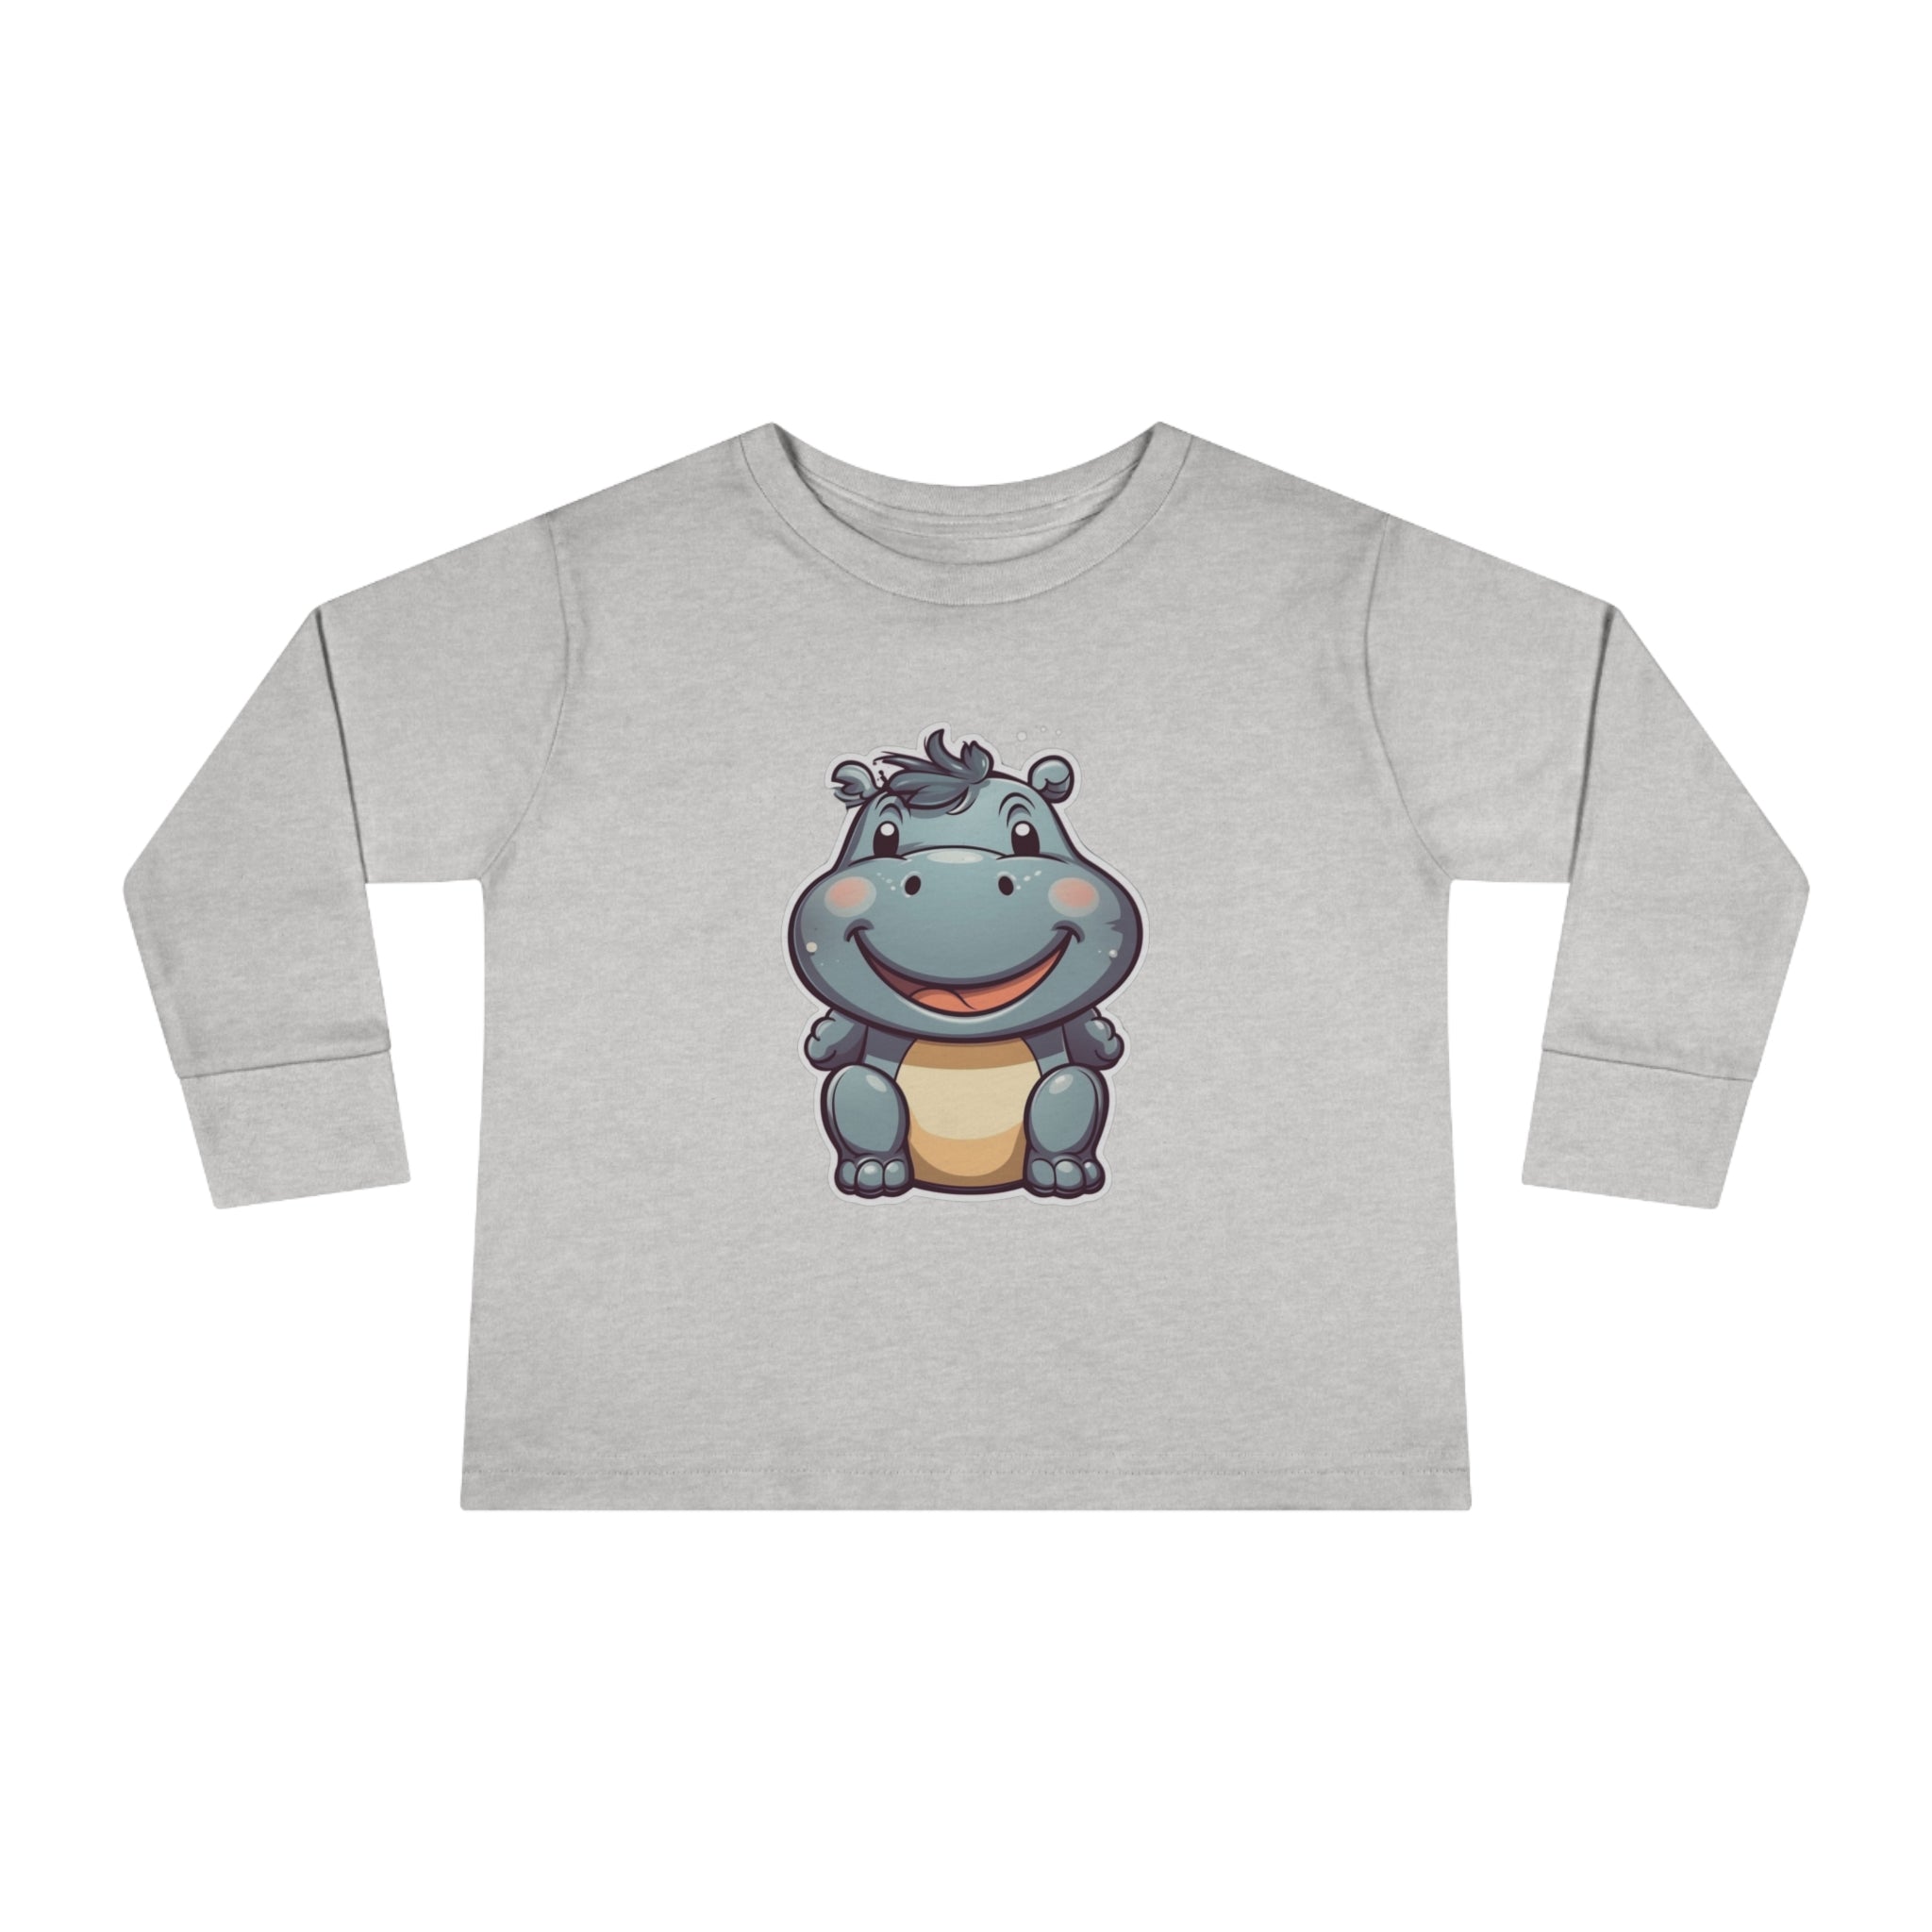 Toddler Long Sleeve Tee - Hippopotamus Calf